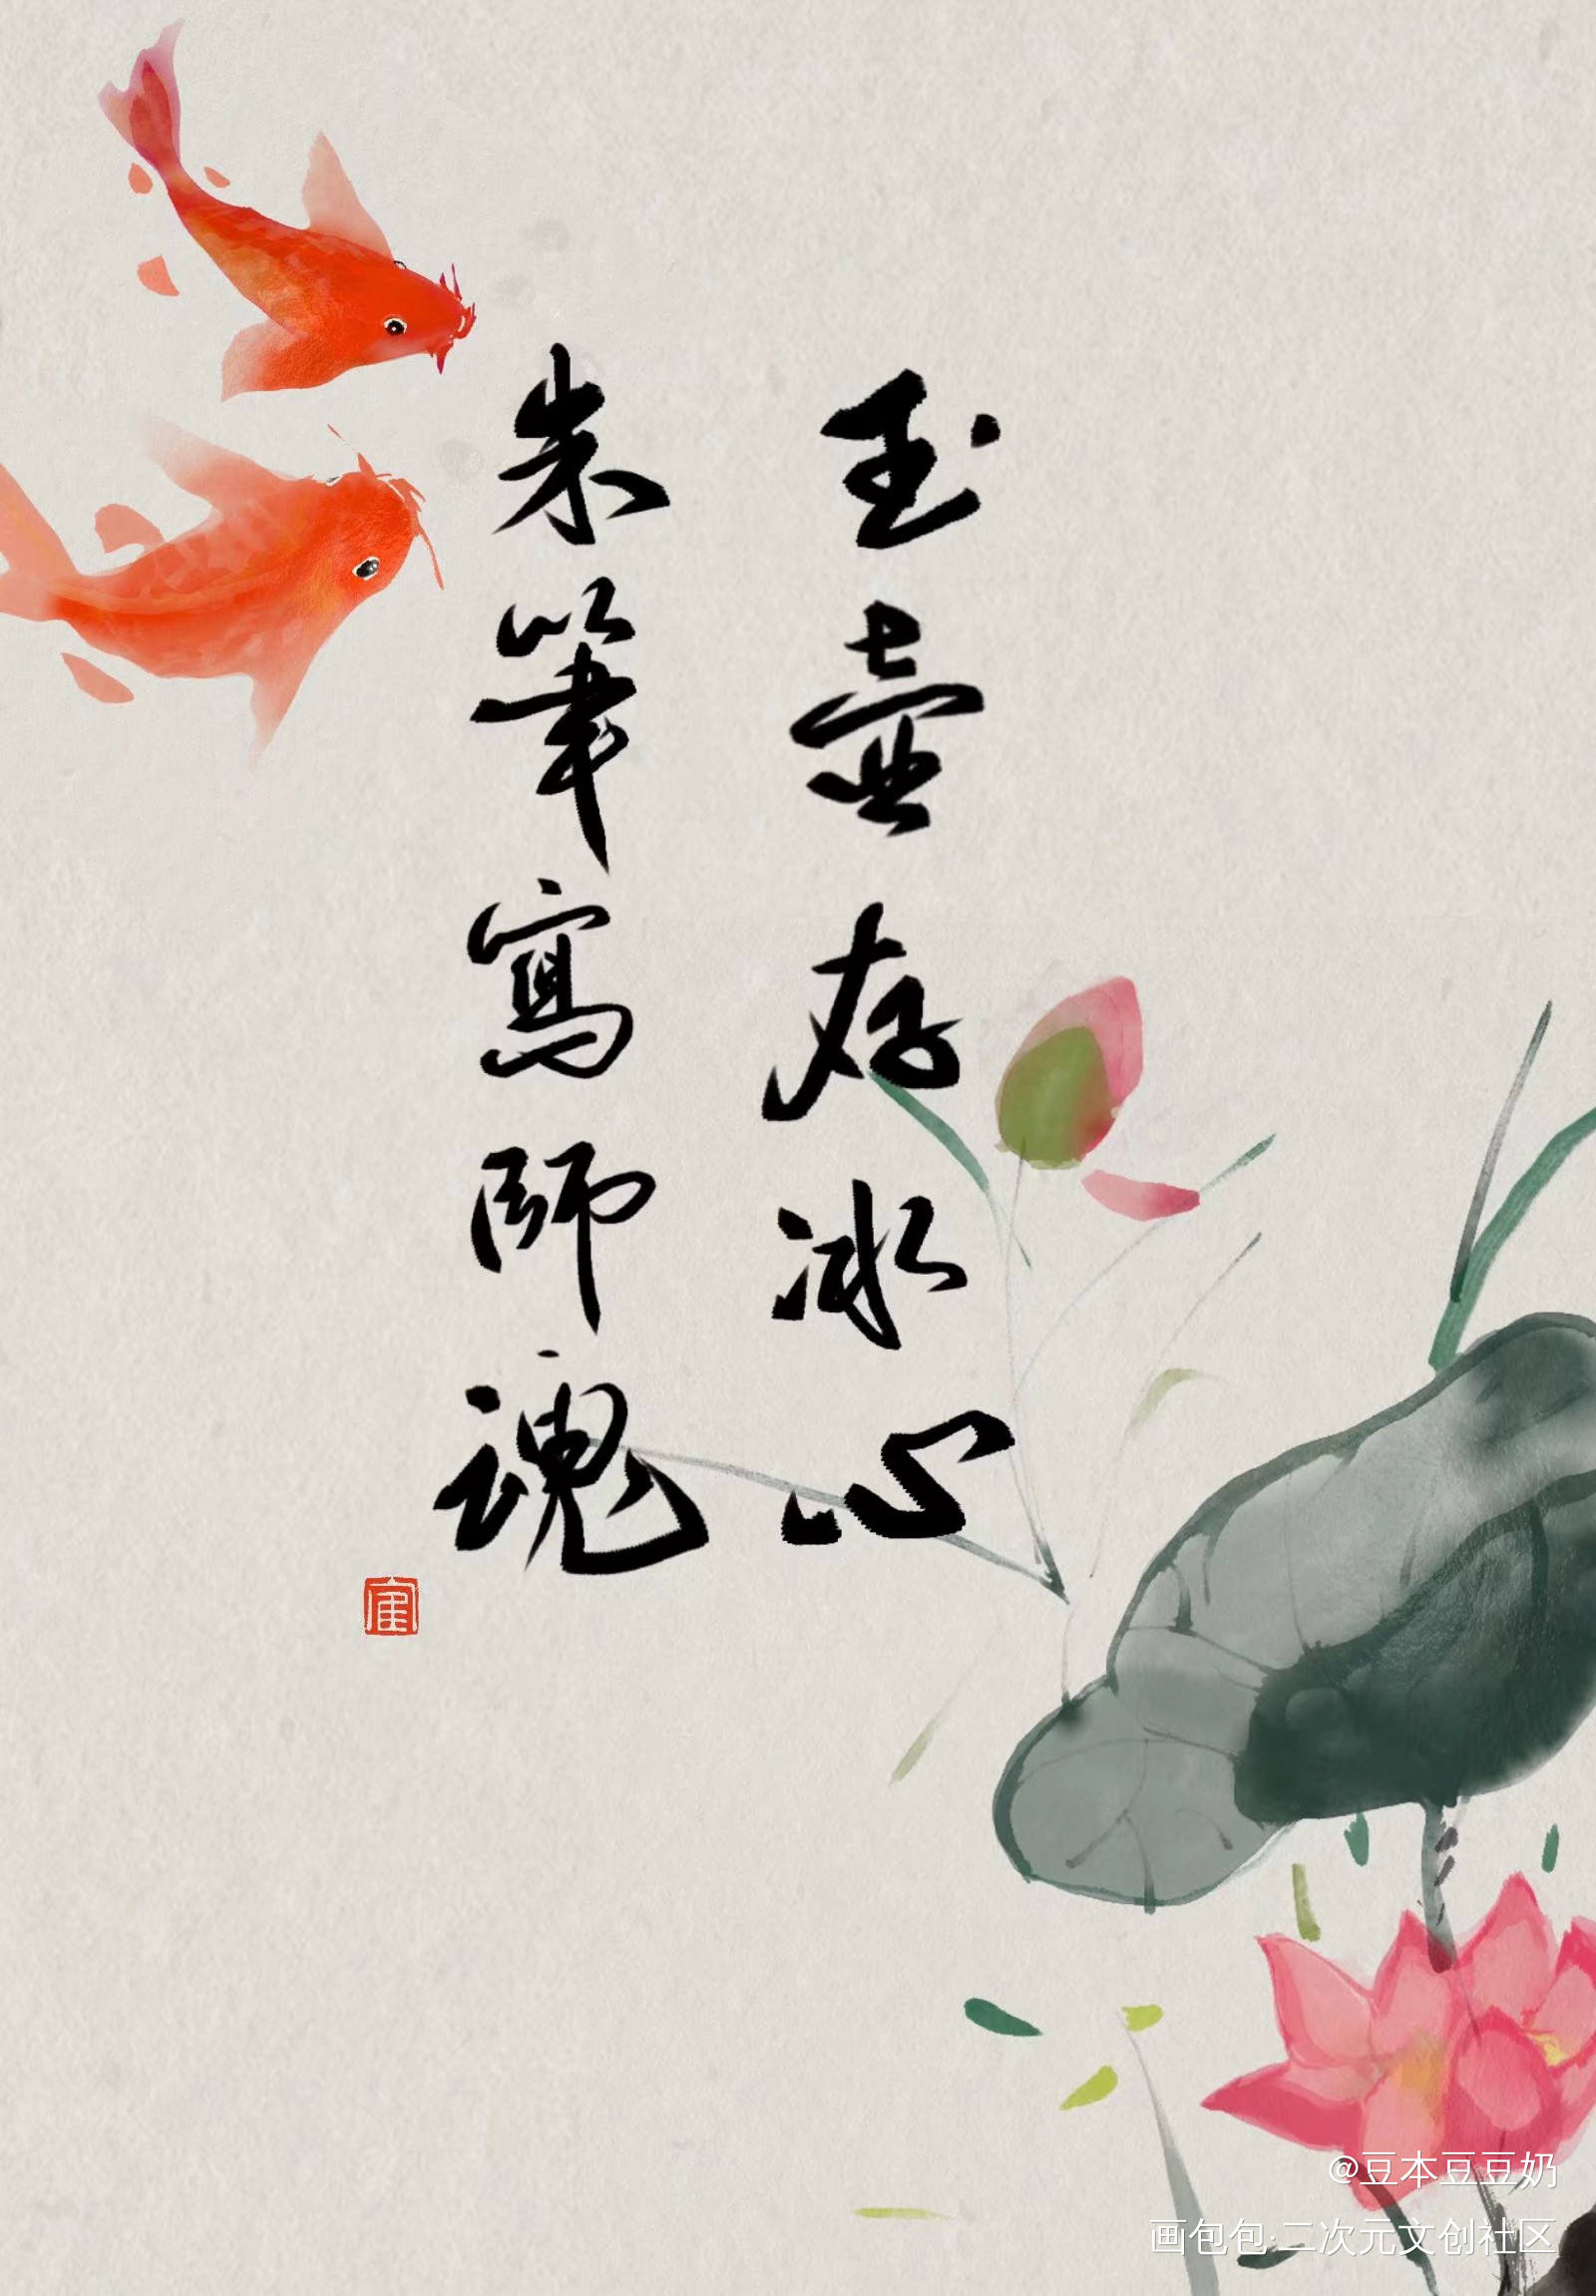 教师节快乐_我要上首推字体设计我要上首页板写联盟见字如晤见字如晤板写绘画作品